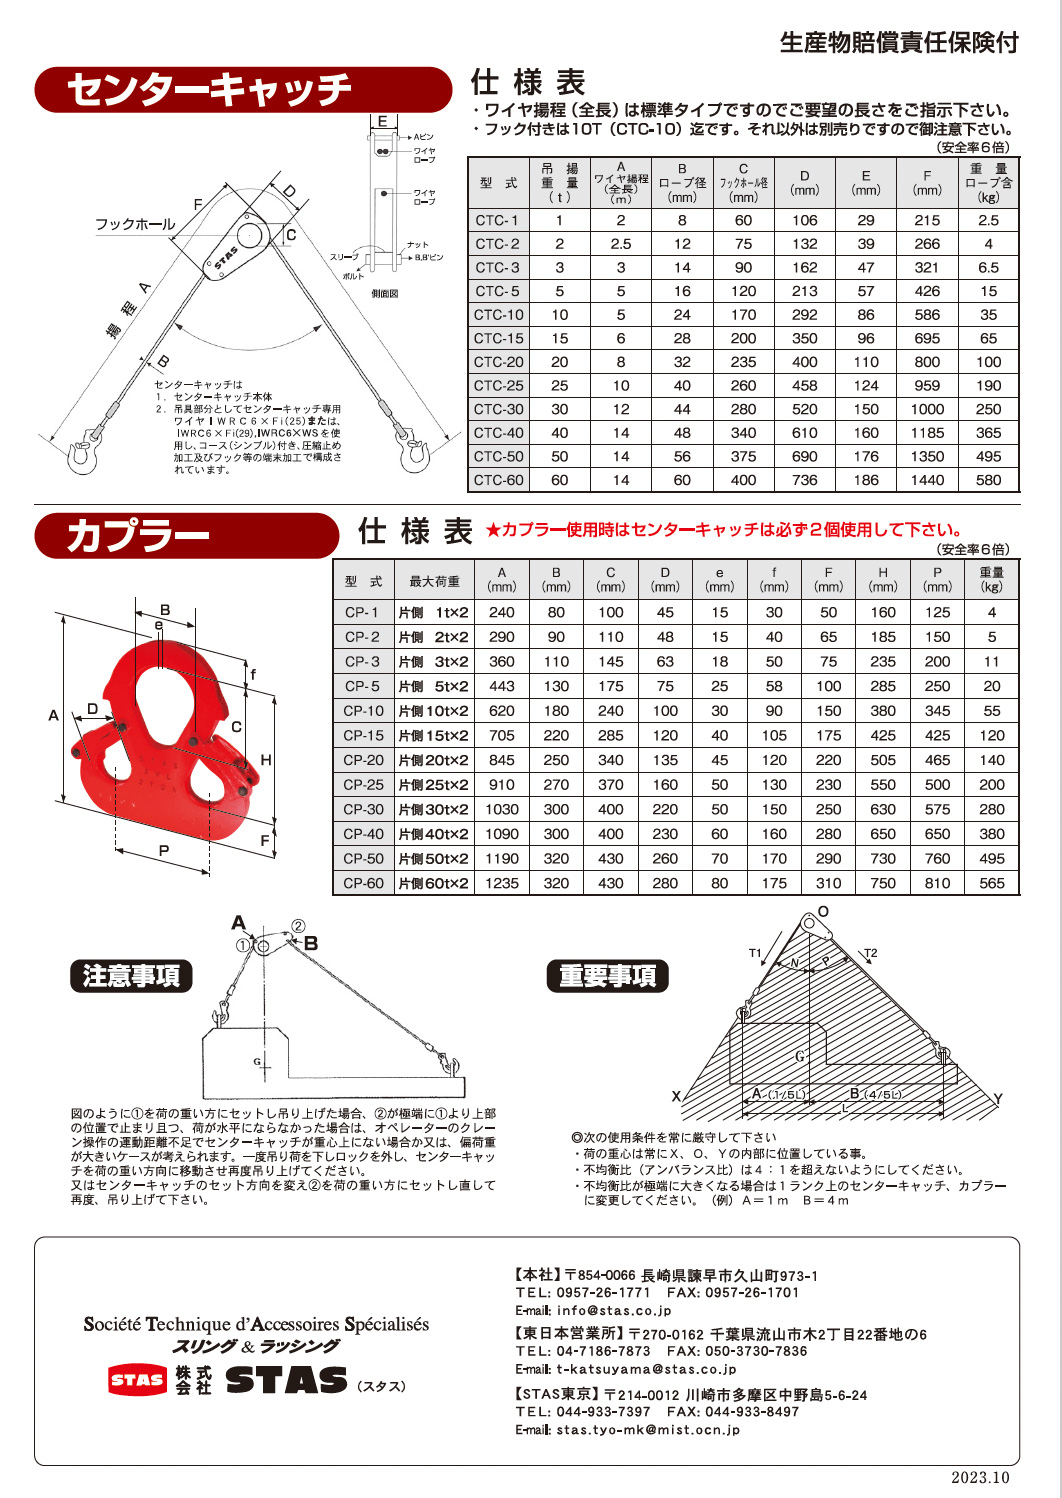 センターキャッチ - 株式会社STAS-センターキャッチの製造、販売。長崎 